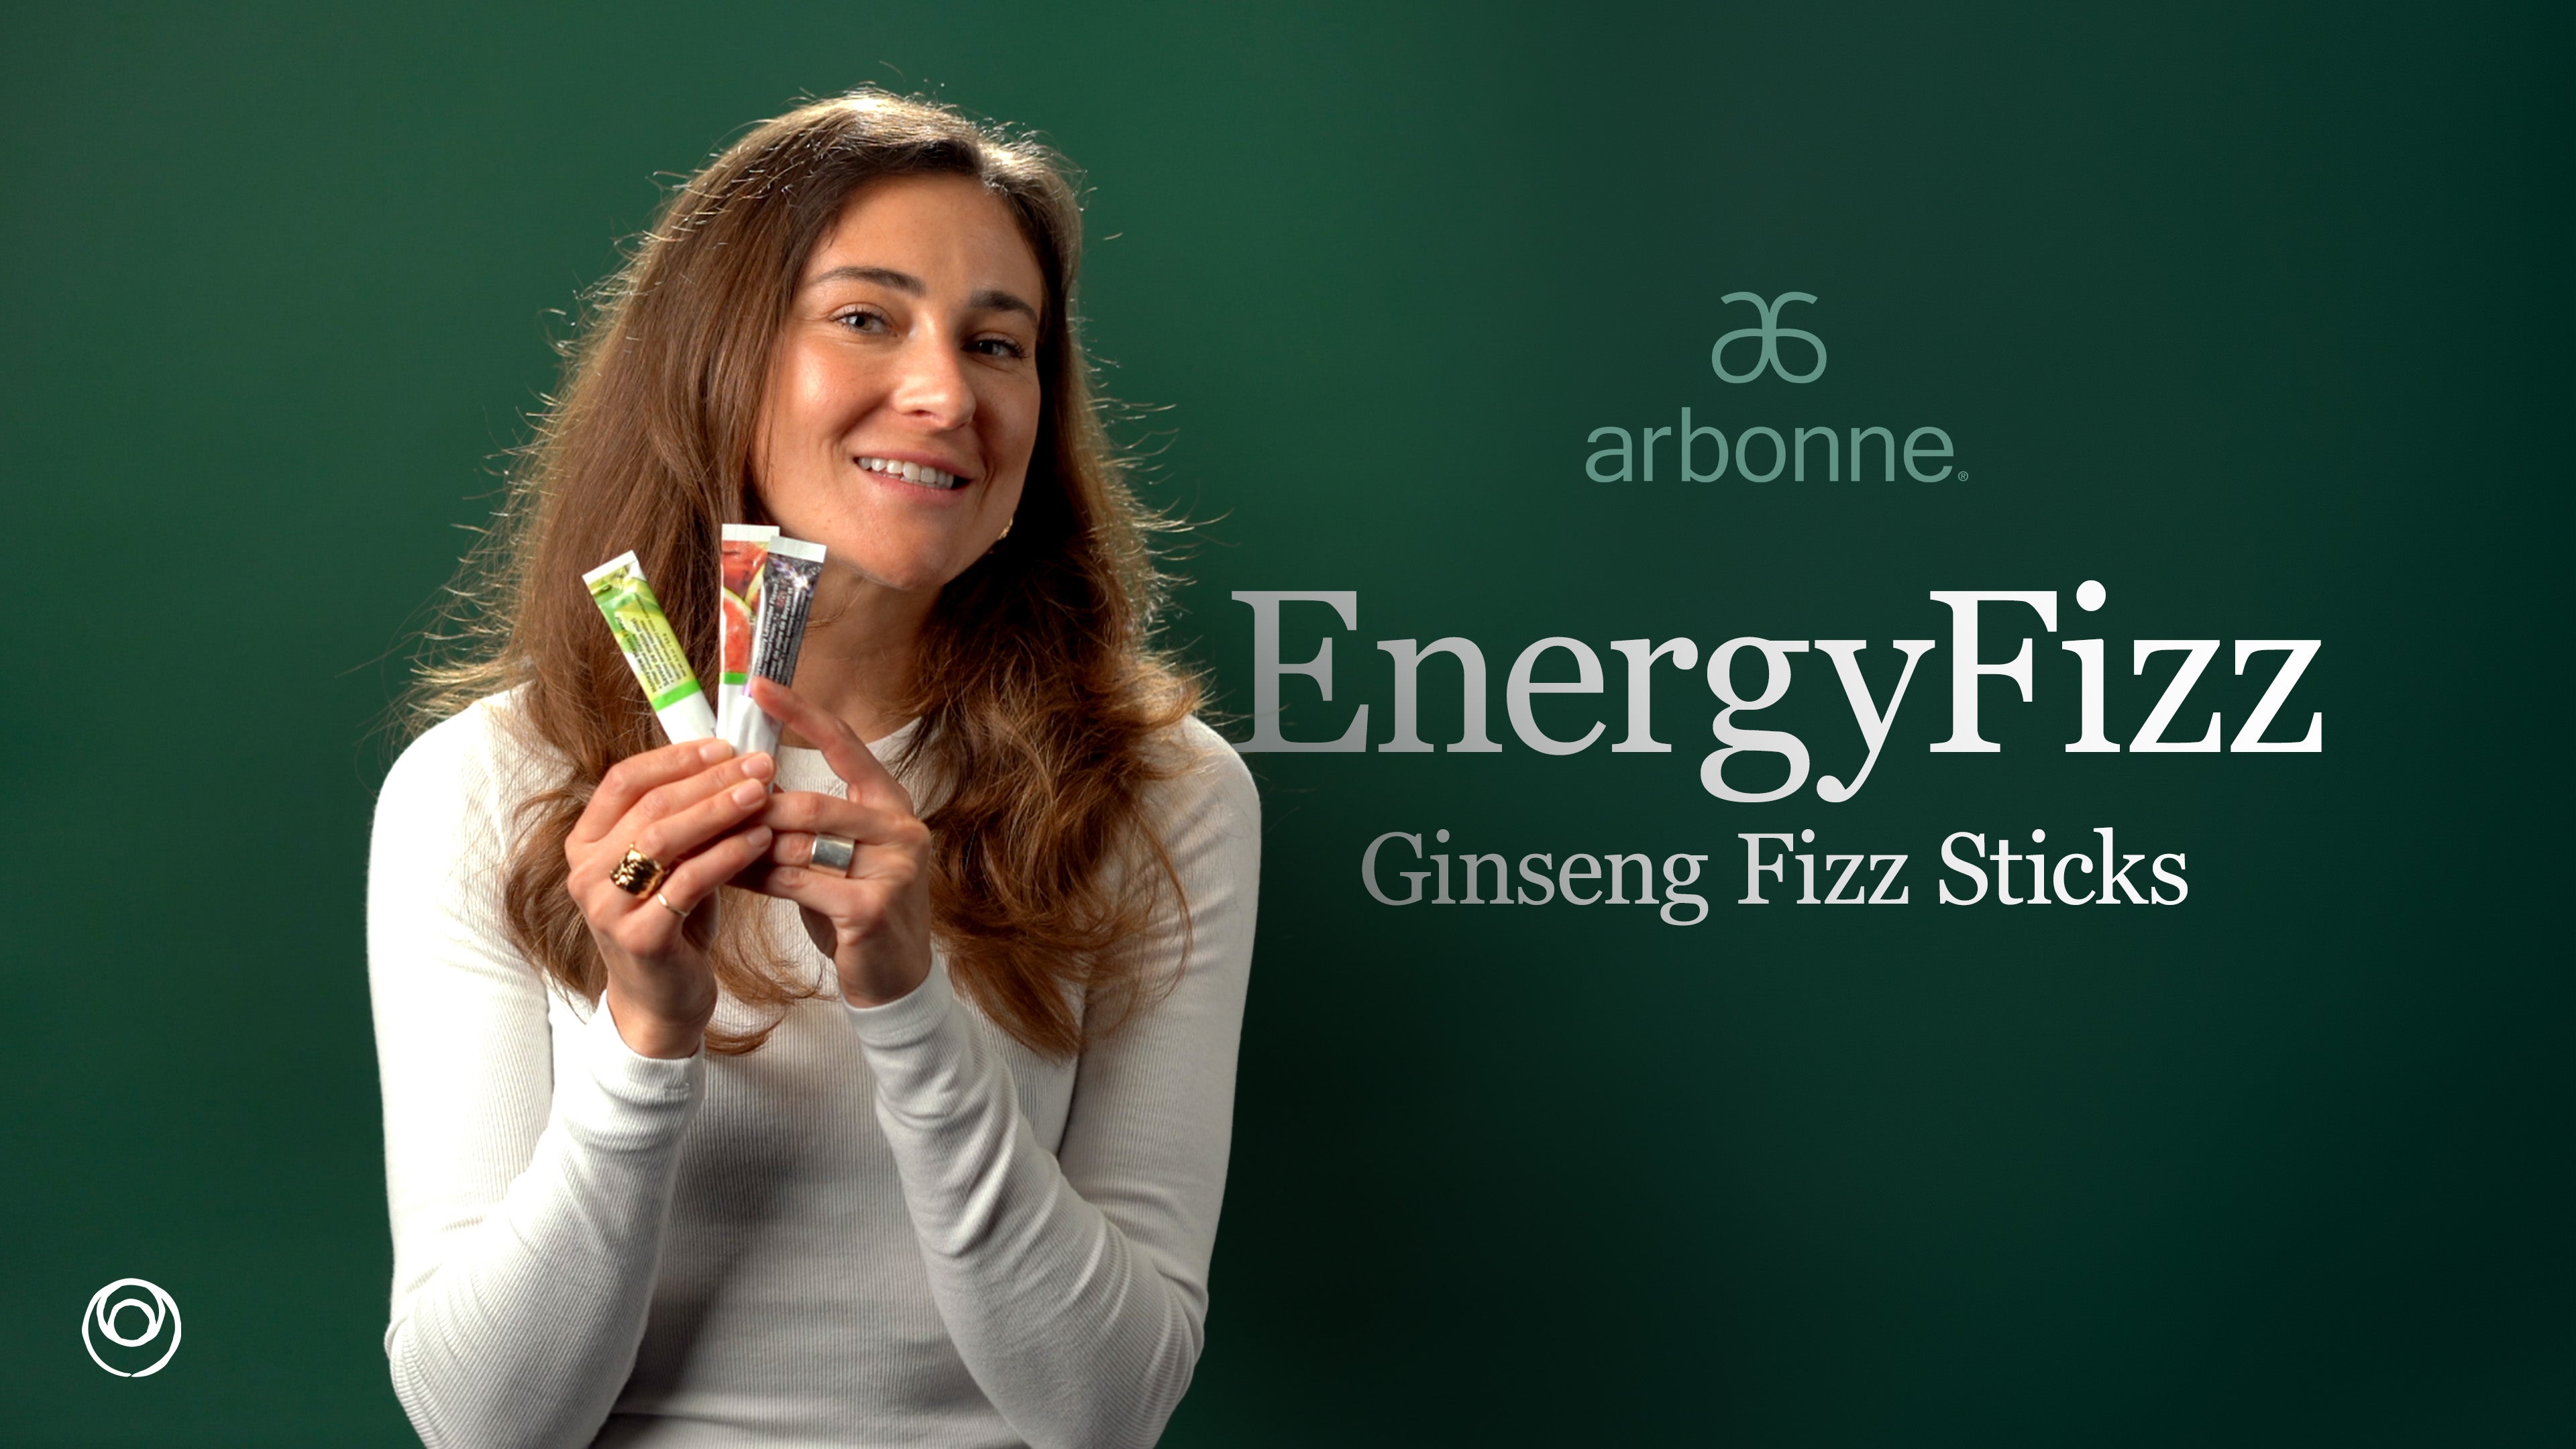 Load video: Arbonne Energy Fizz Video by MindBodySkin.ca